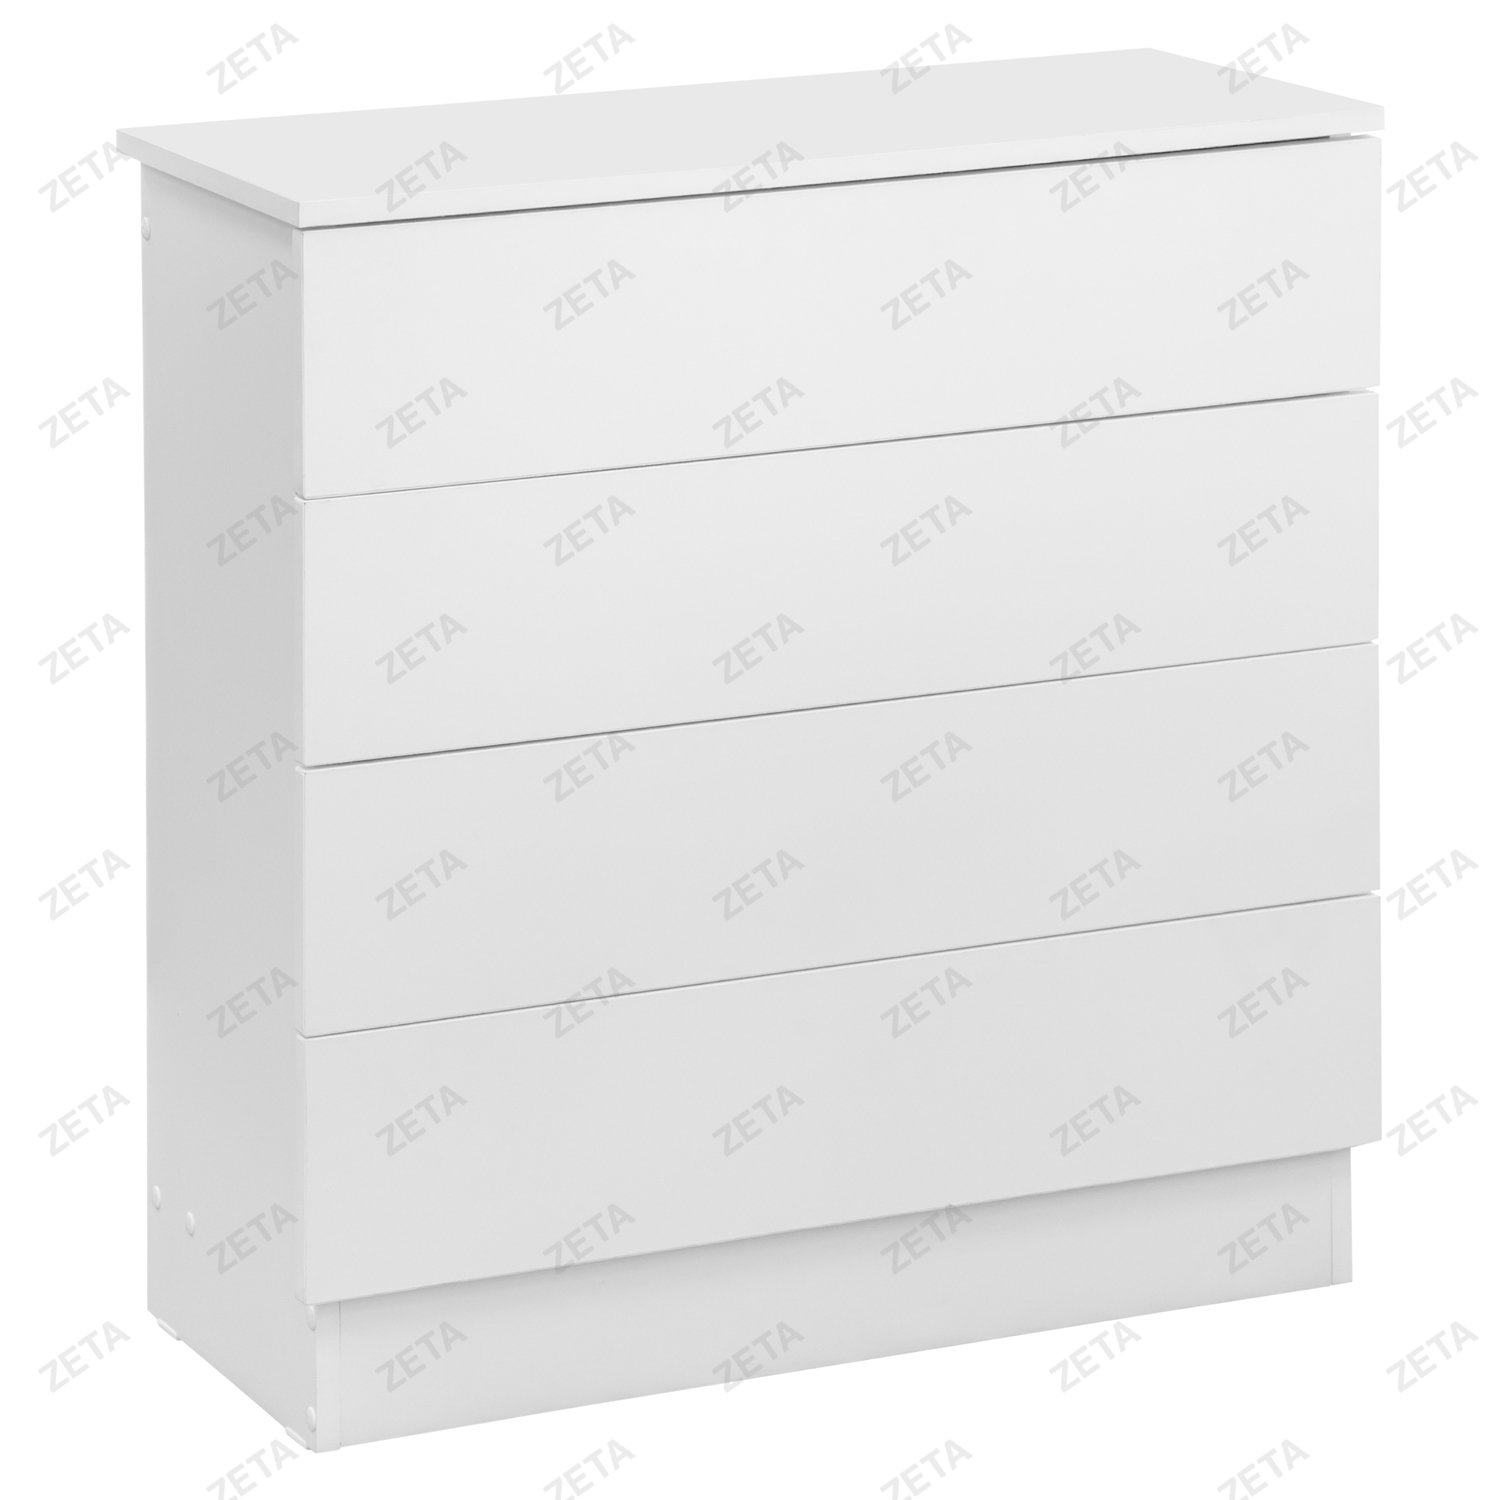 Комод "Симпл" 4 ящика (780*330*800 мм.) белый - изображение 1